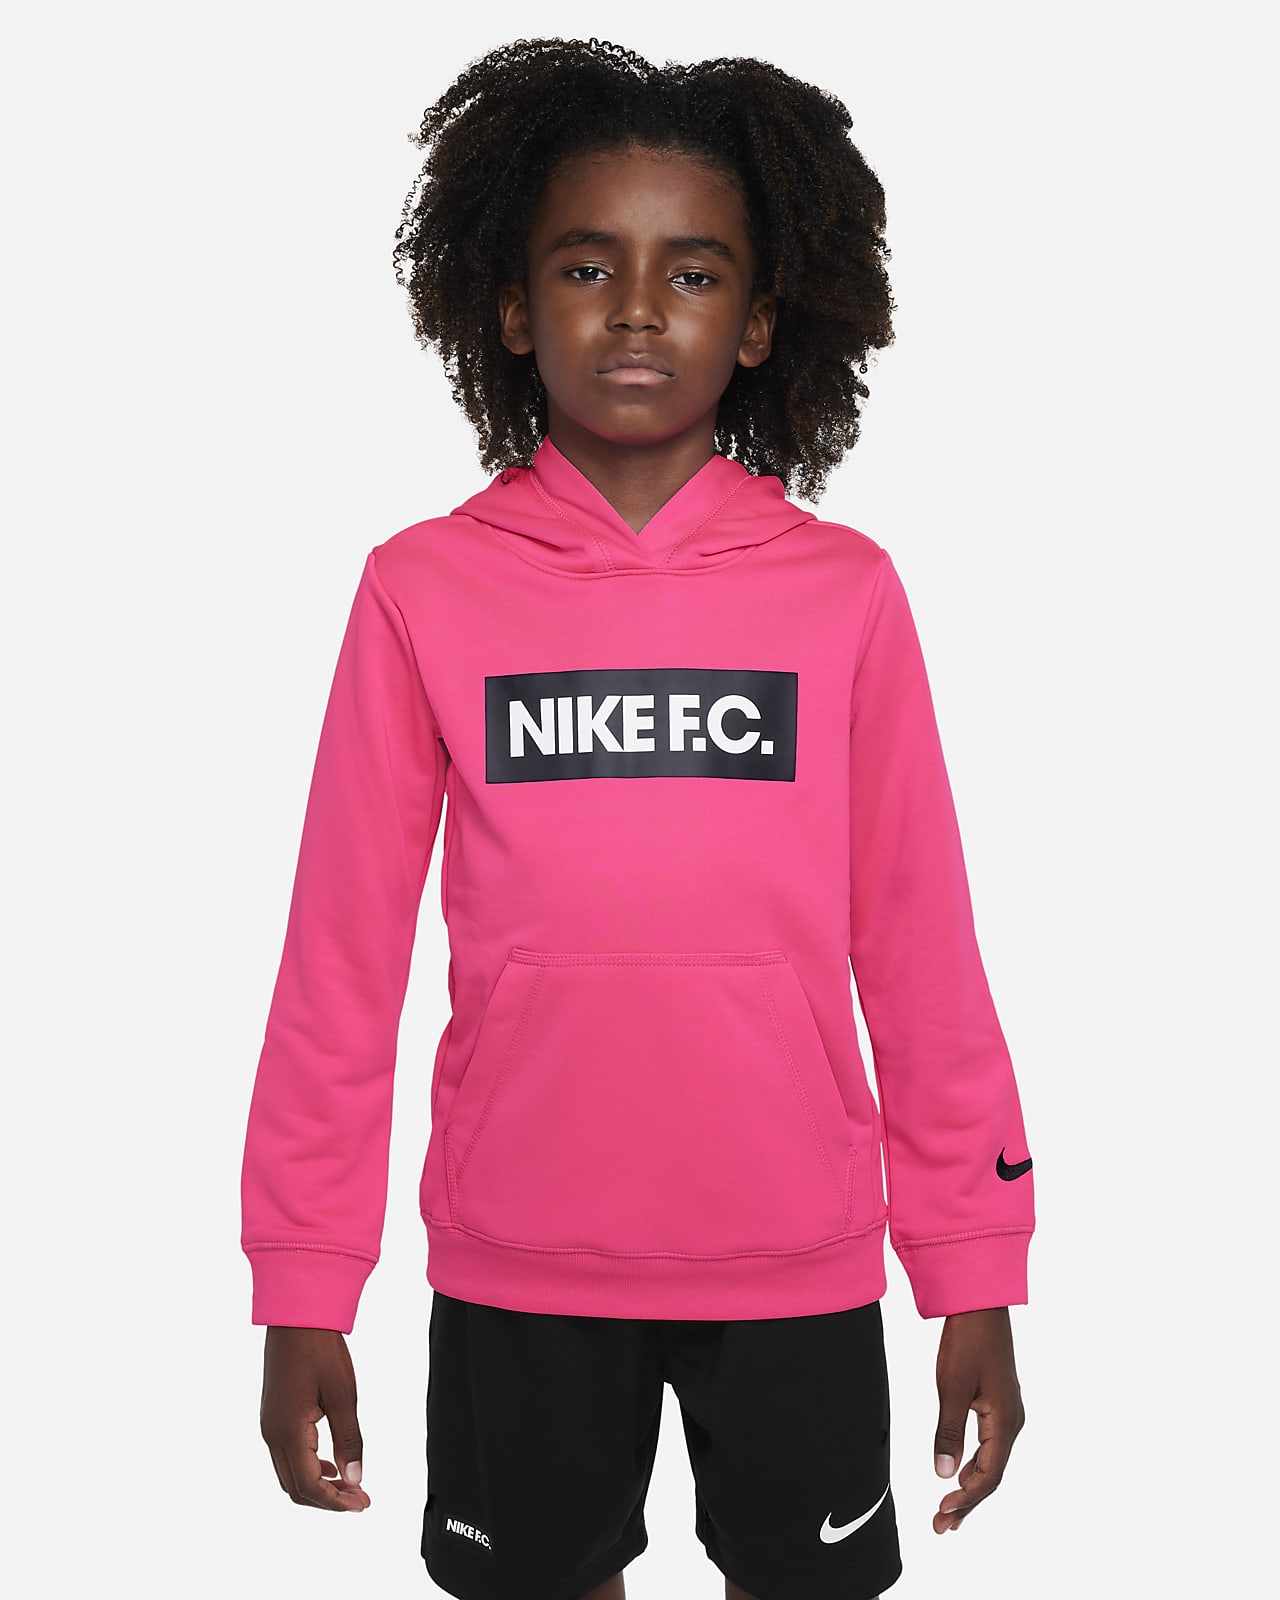 Ánimo frutas Simposio Nike F.C. Sudadera con capucha de fútbol - Niño/a. Nike ES